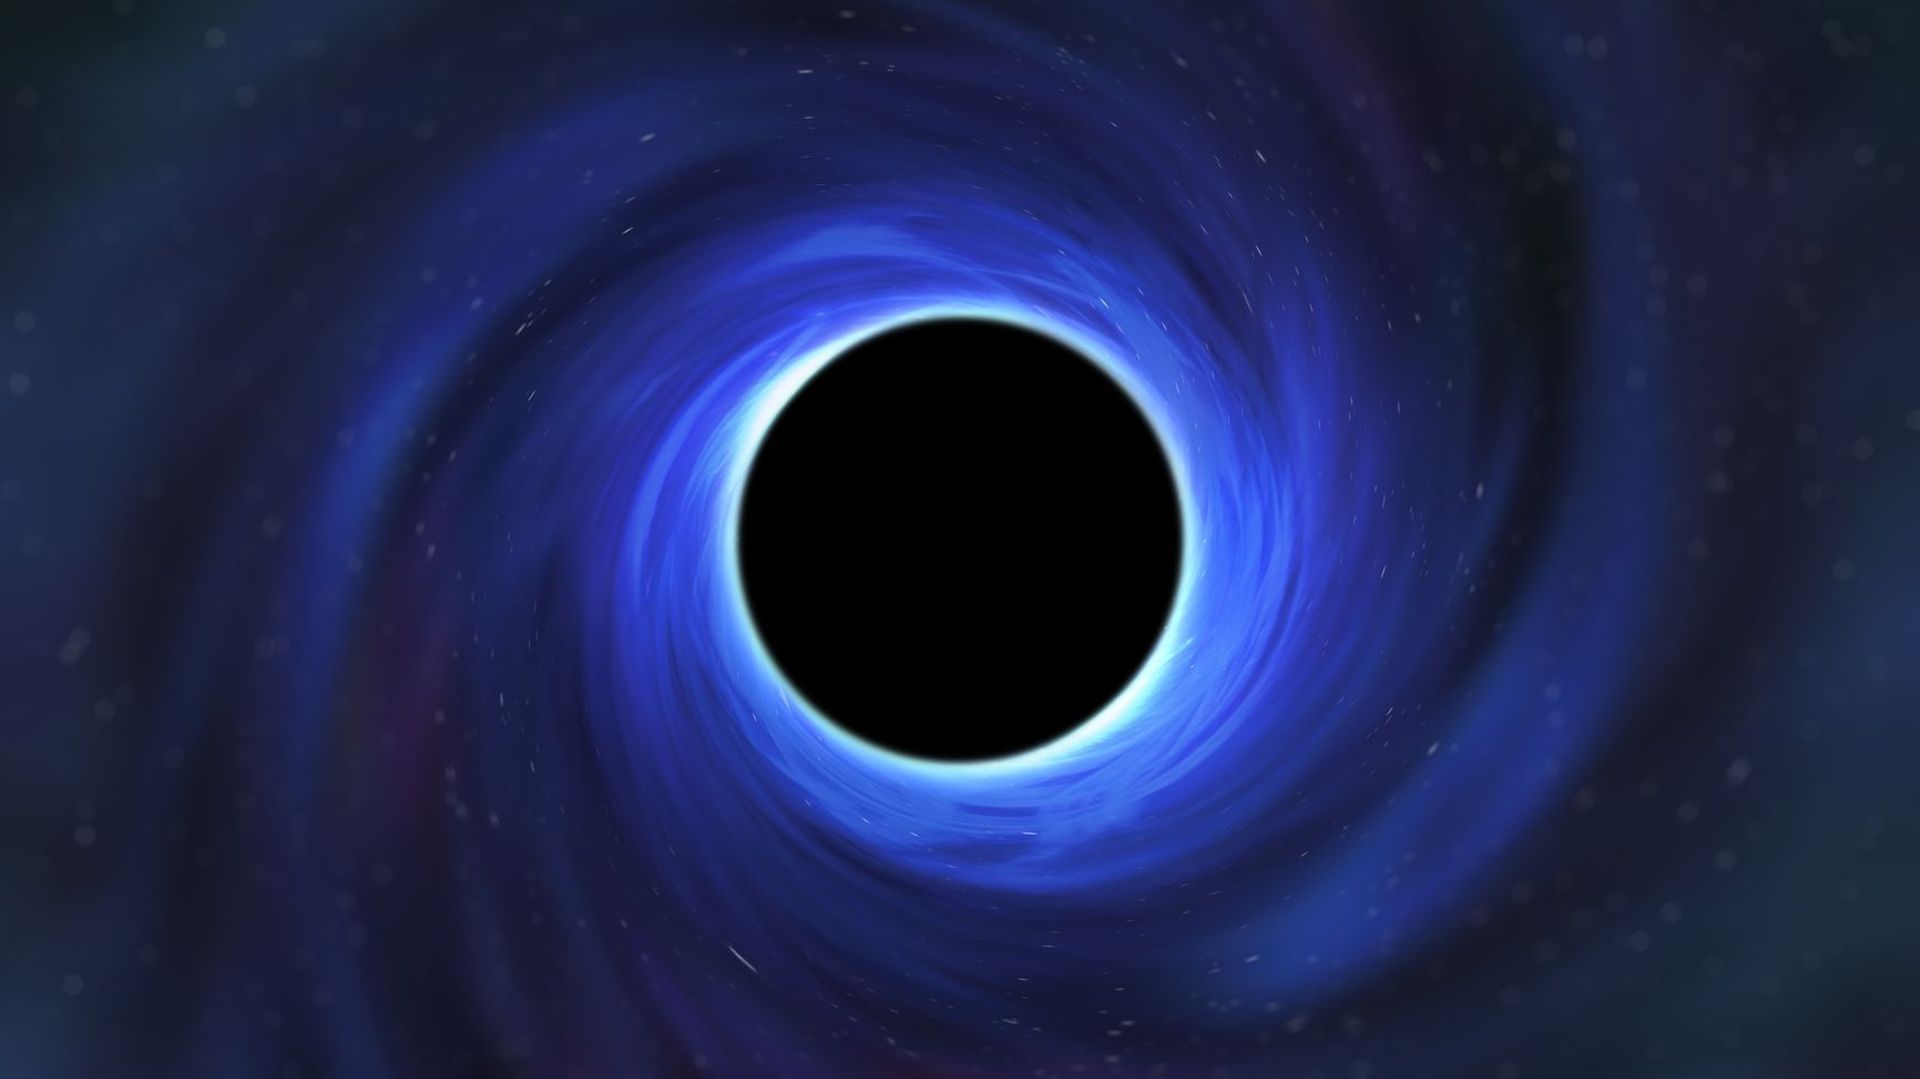 Qu’est-ce que ça ferait de tomber dans un trou noir ?